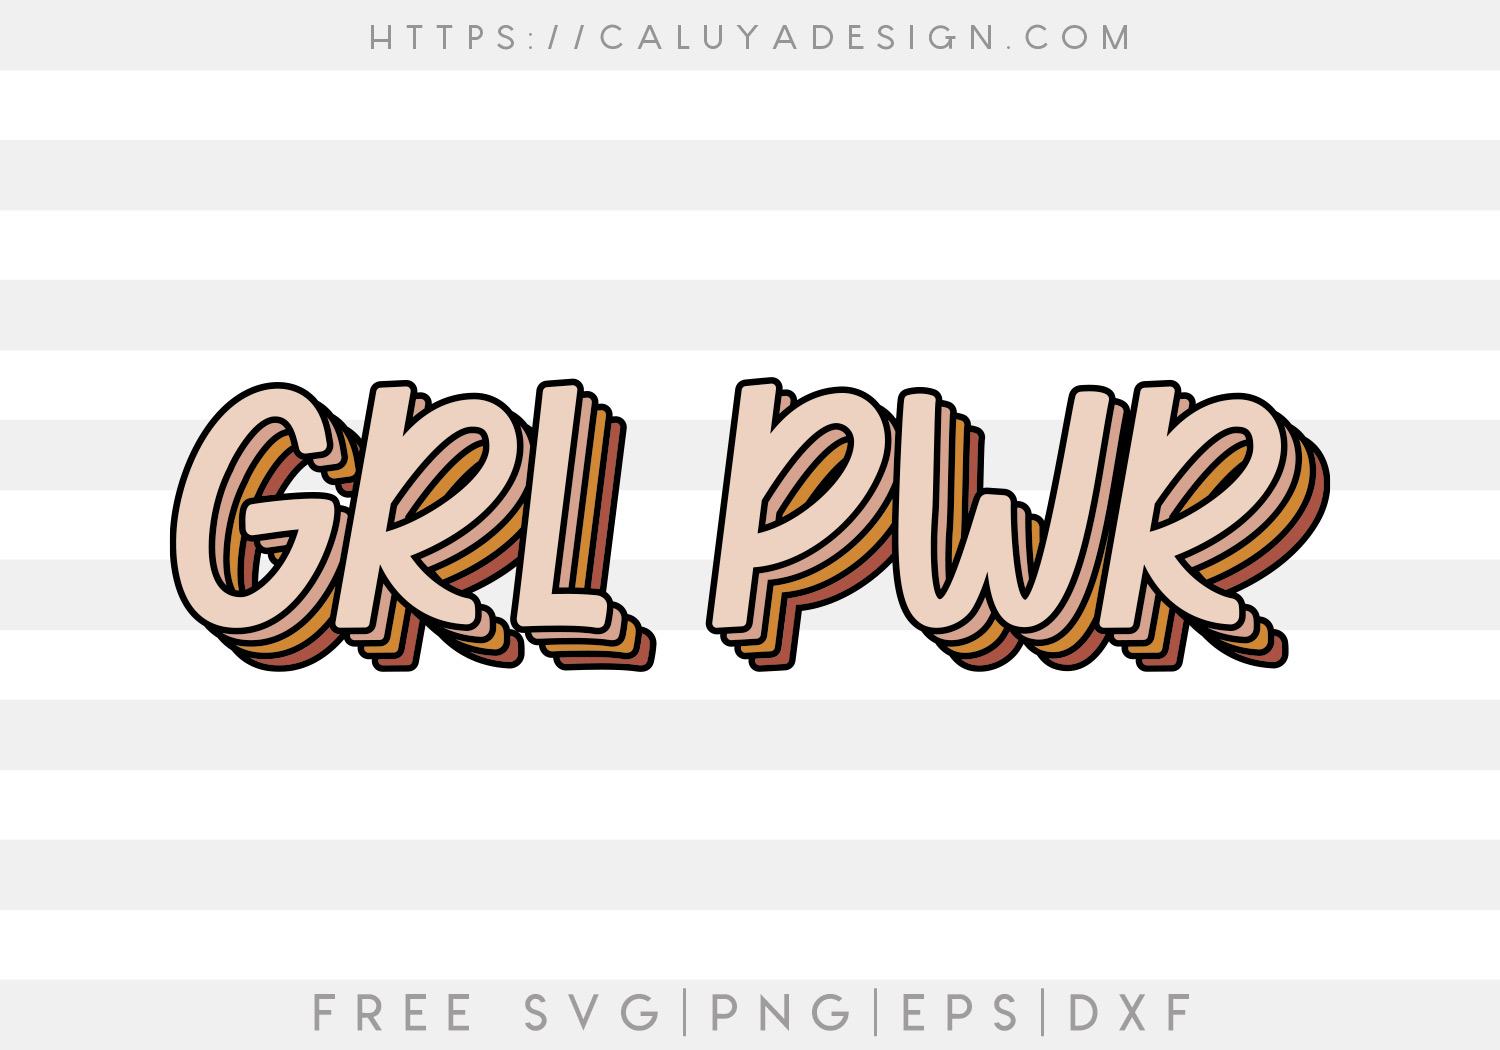 Download Free Grl Pwr Svg Caluya Design